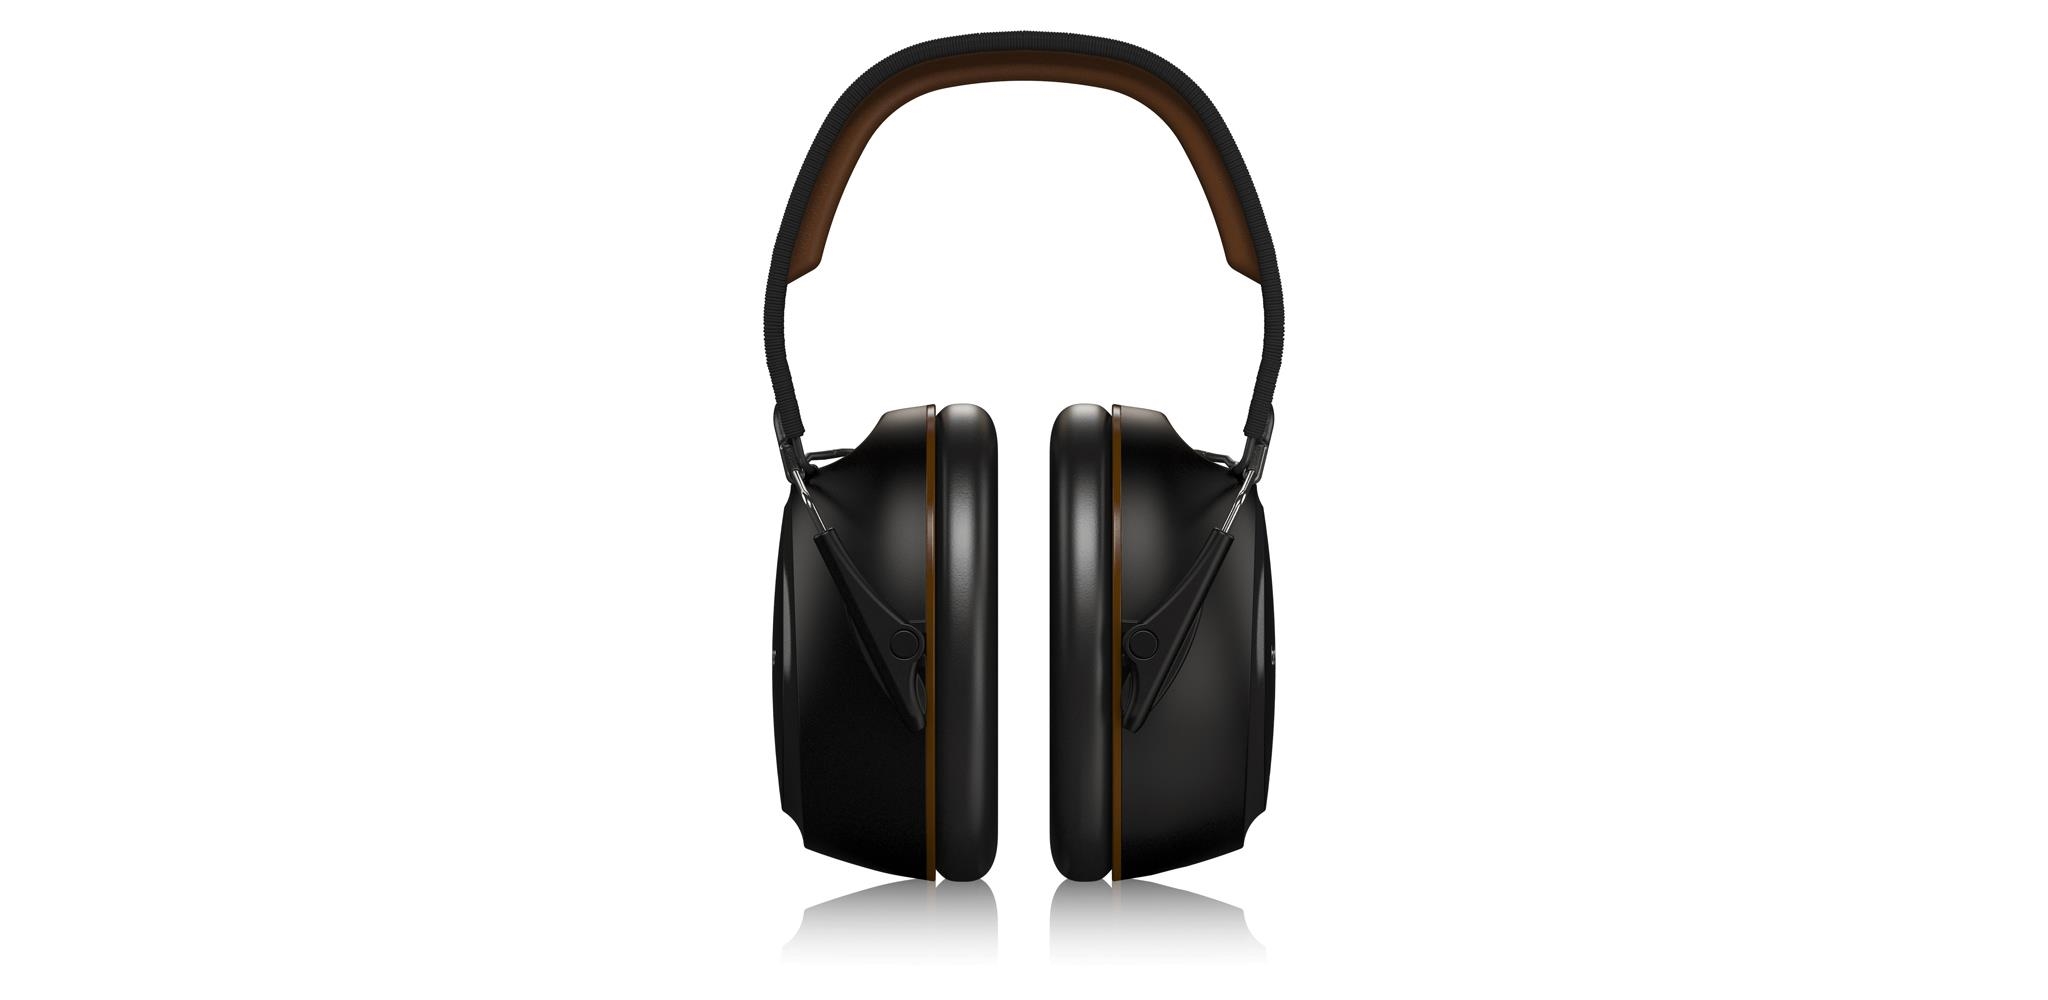 Studio Headphones Behringer DH100